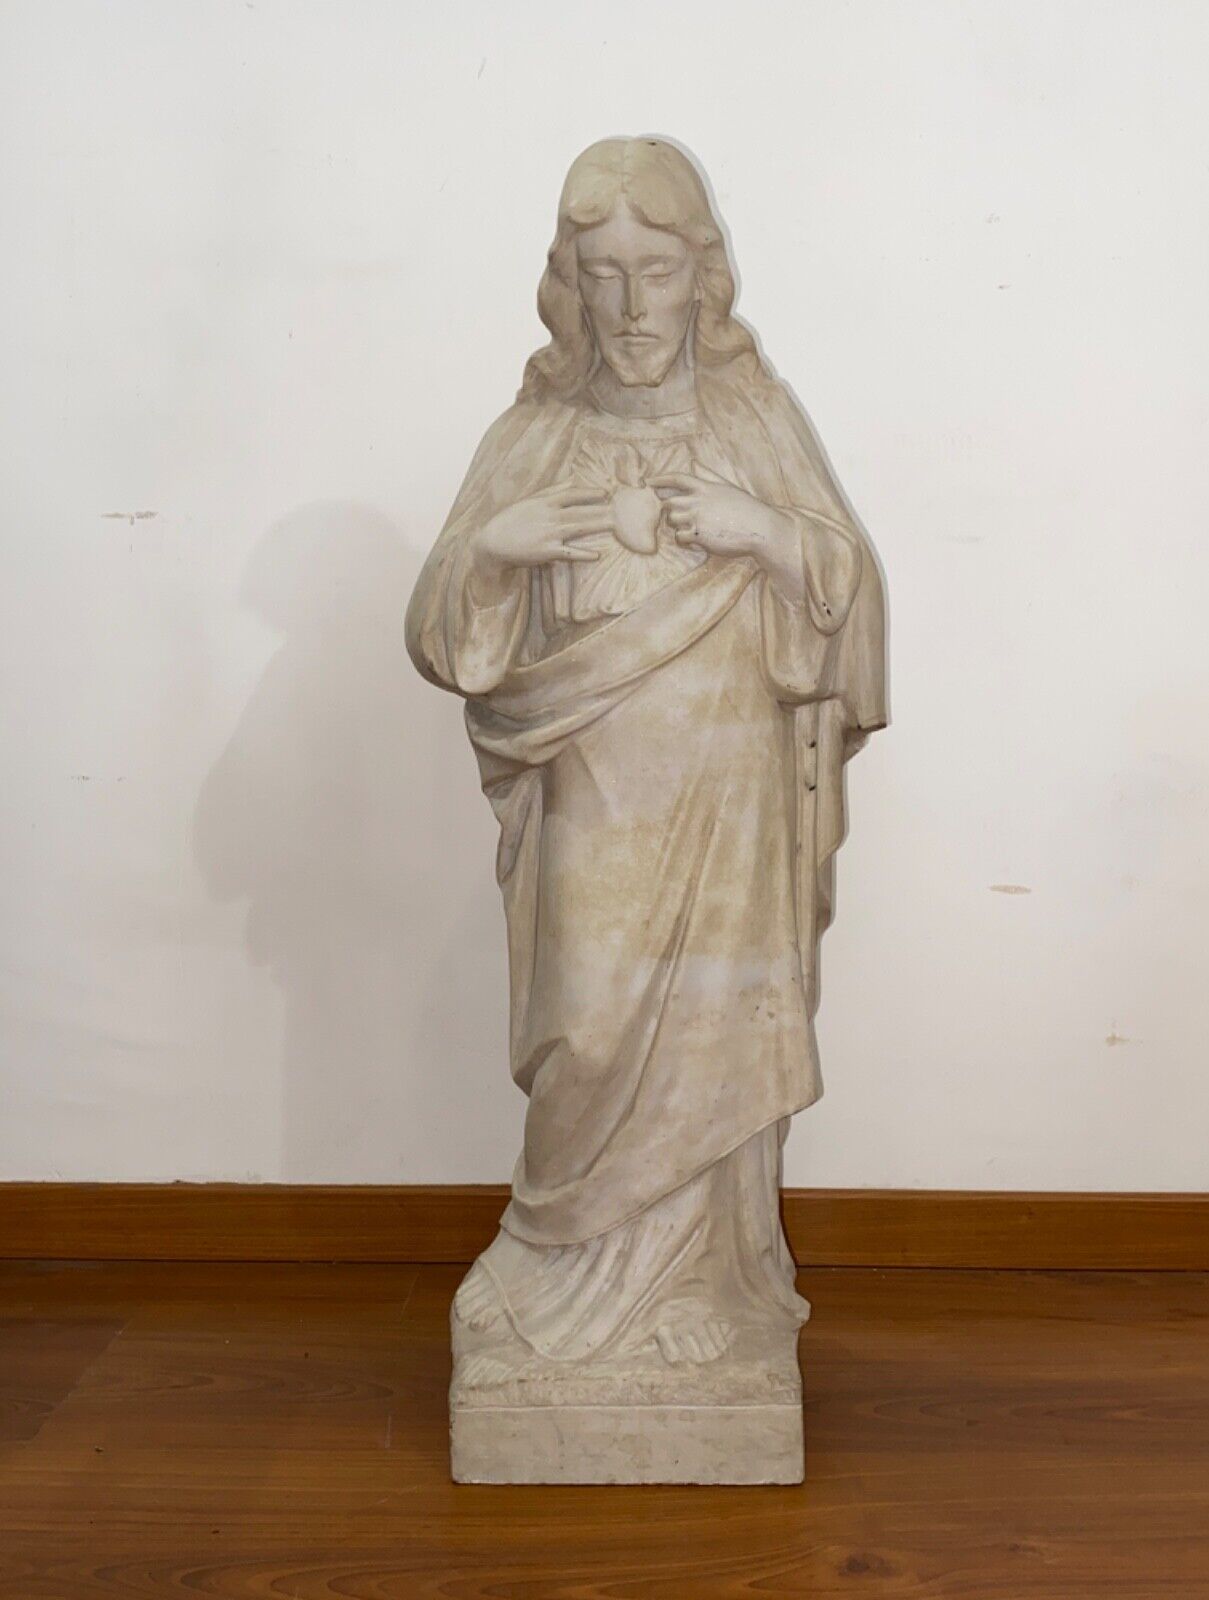 Antica scultura in marmo Sacro Cuore di Gesù del XVIII secolo – Immagine frontale